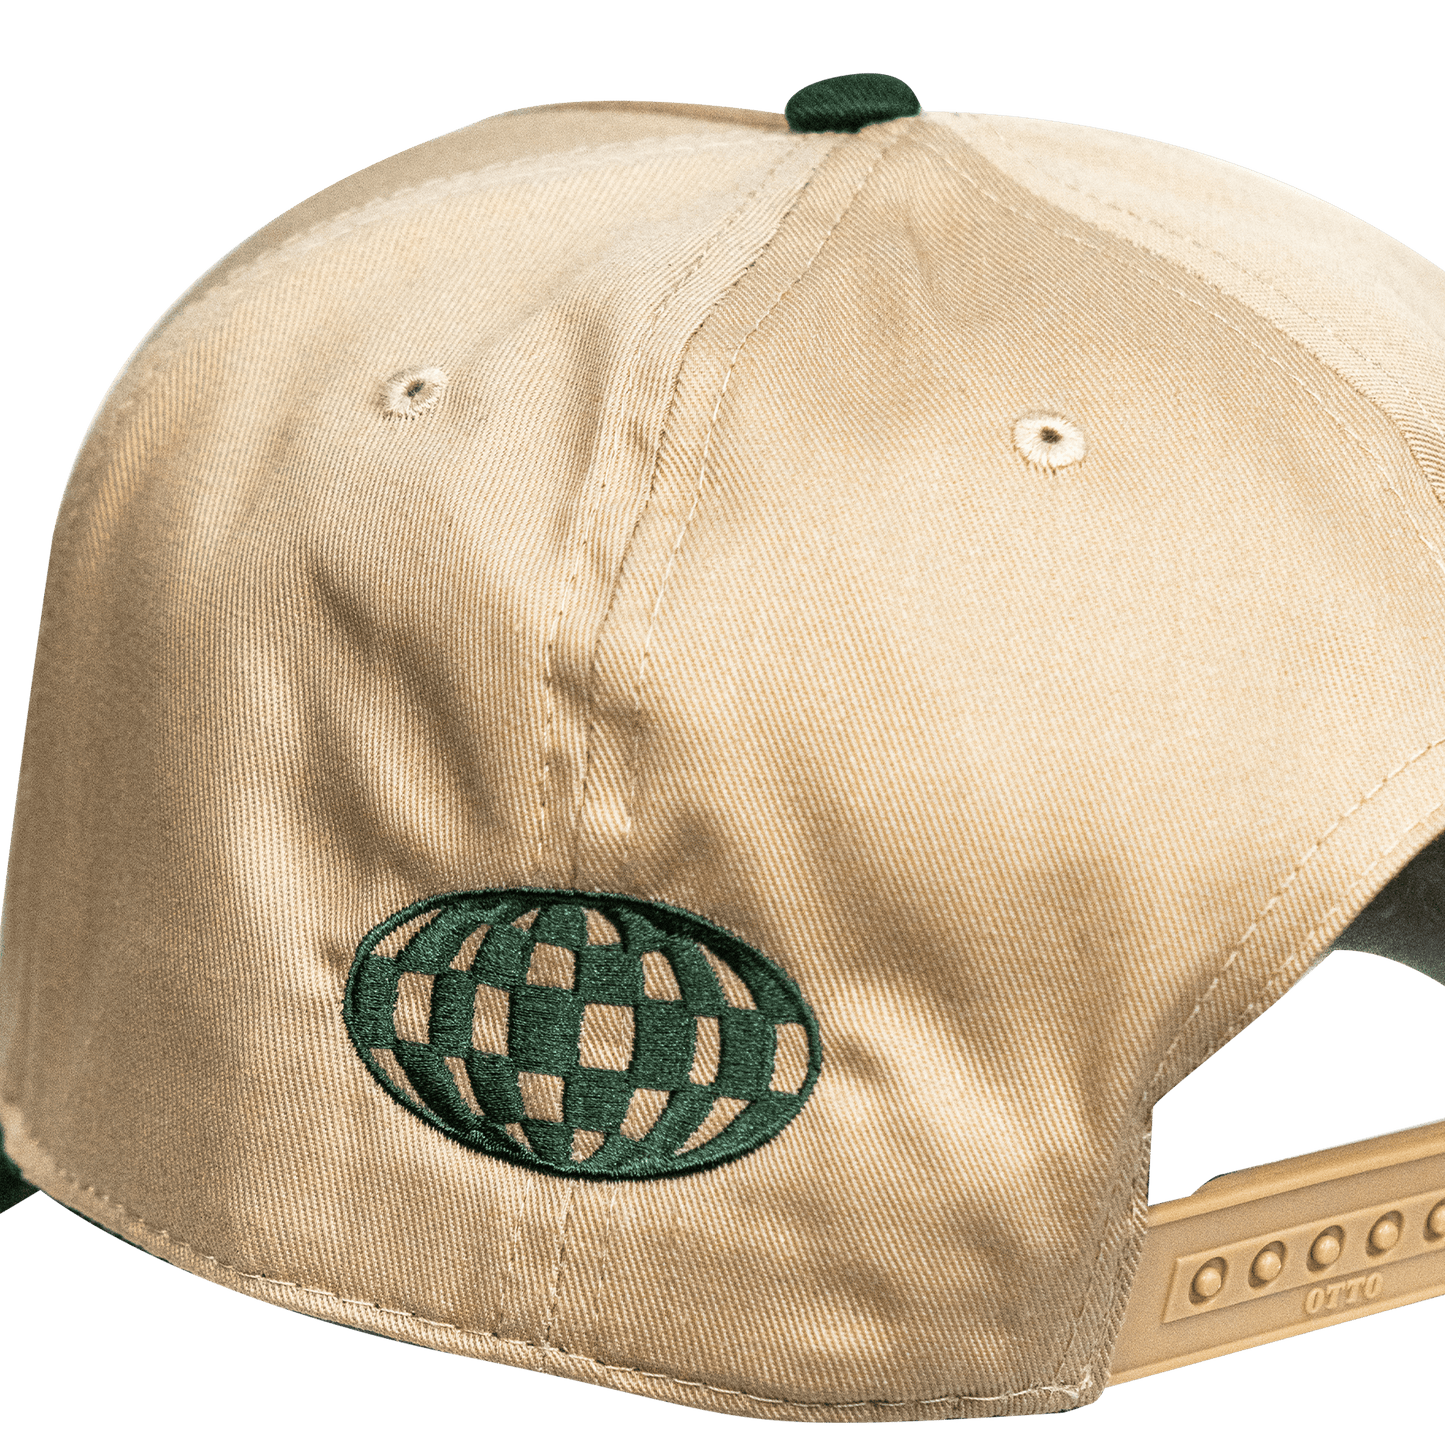 LTD Tan/Green Hat